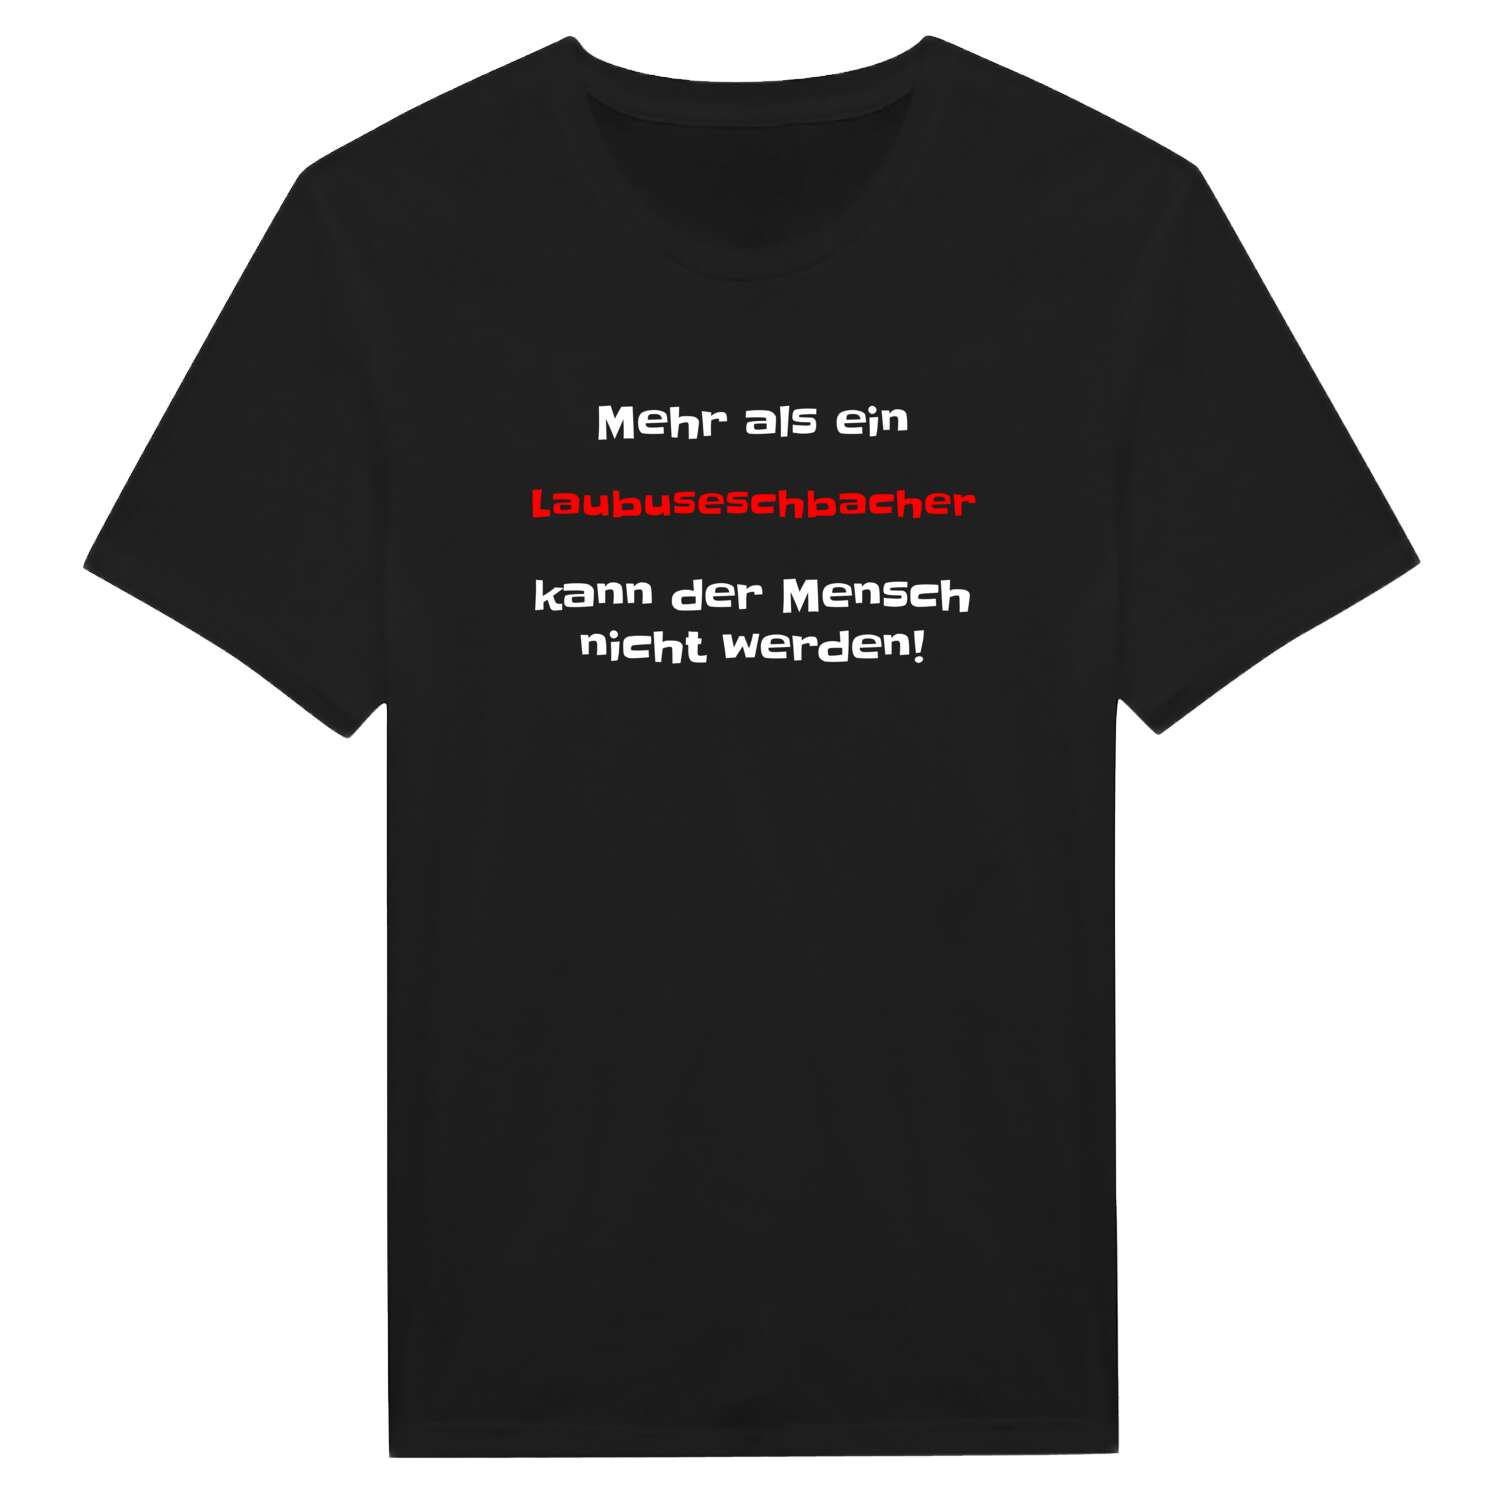 Laubuseschbach T-Shirt »Mehr als ein«